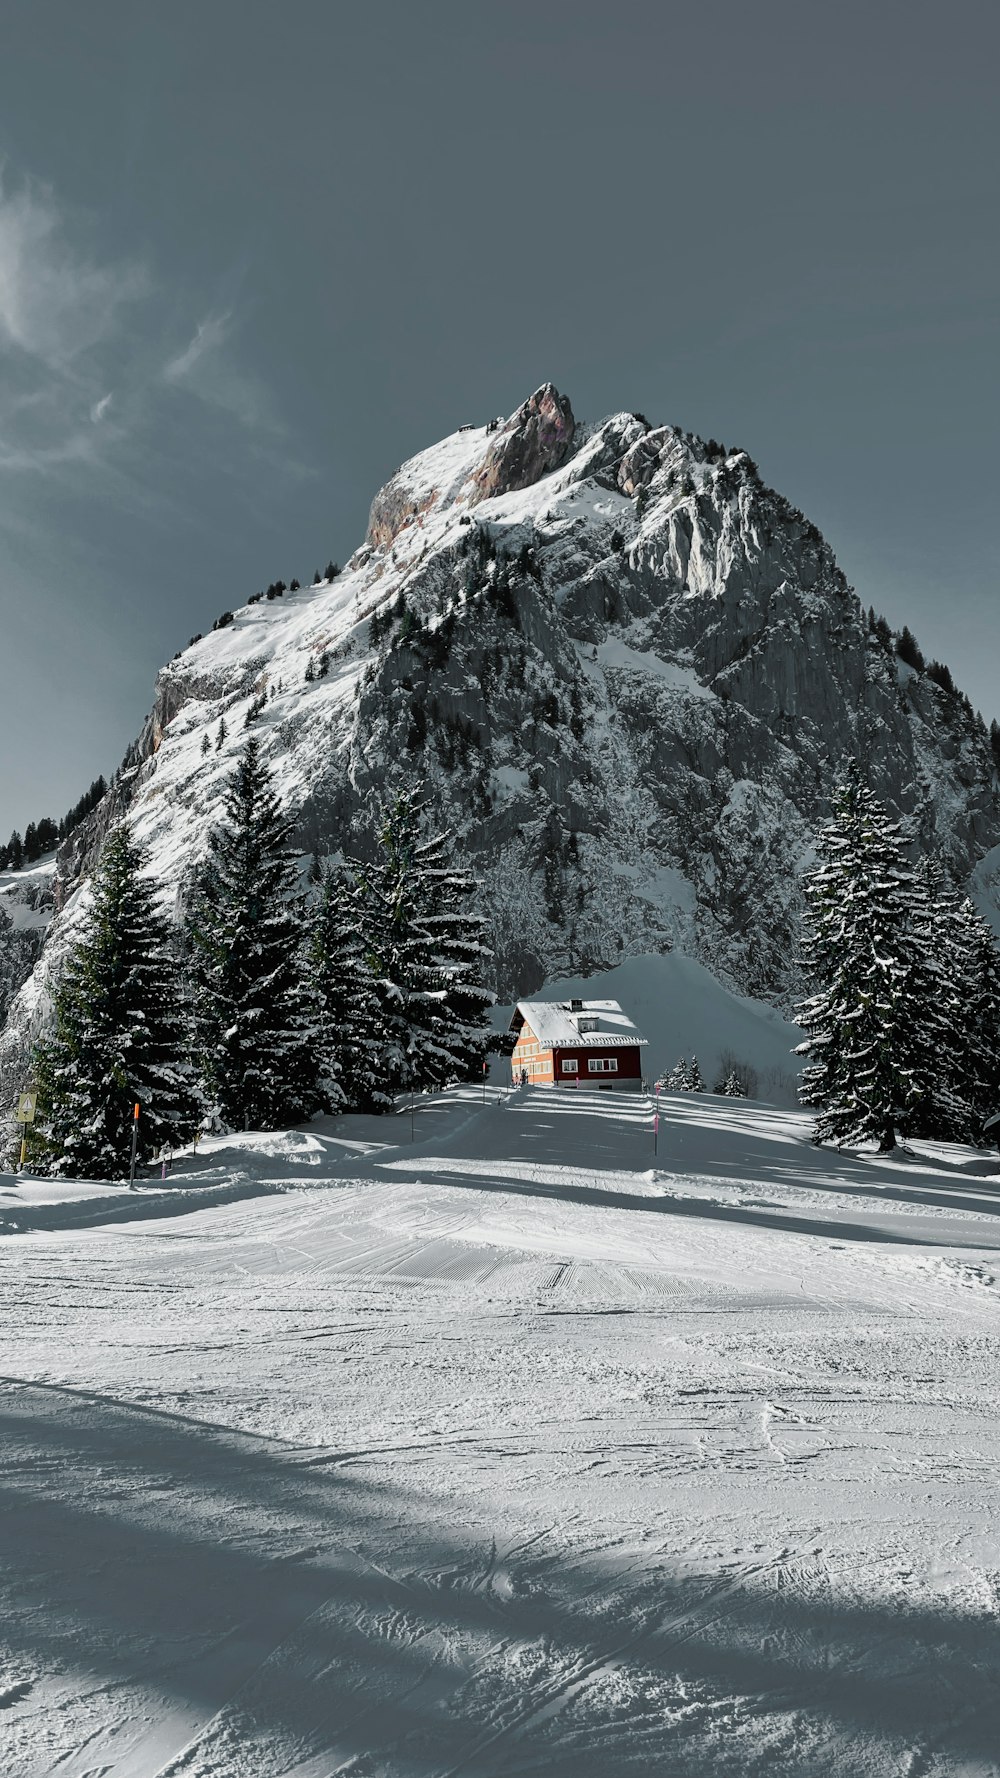 a house on a snowy mountain